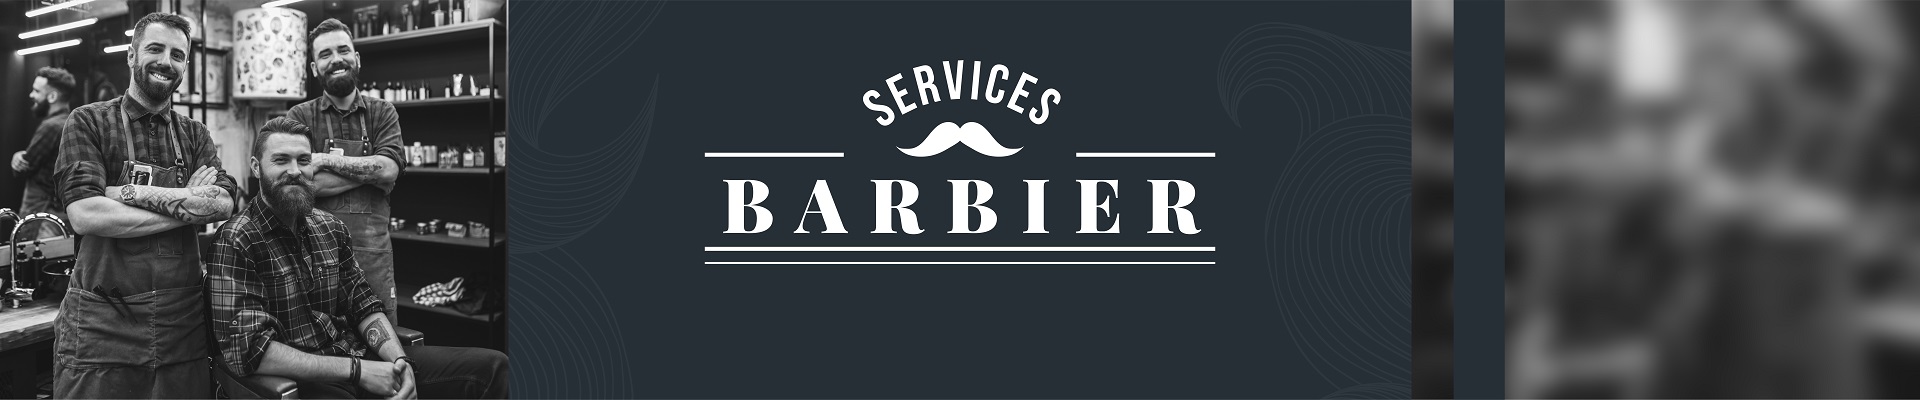  Services Barbier